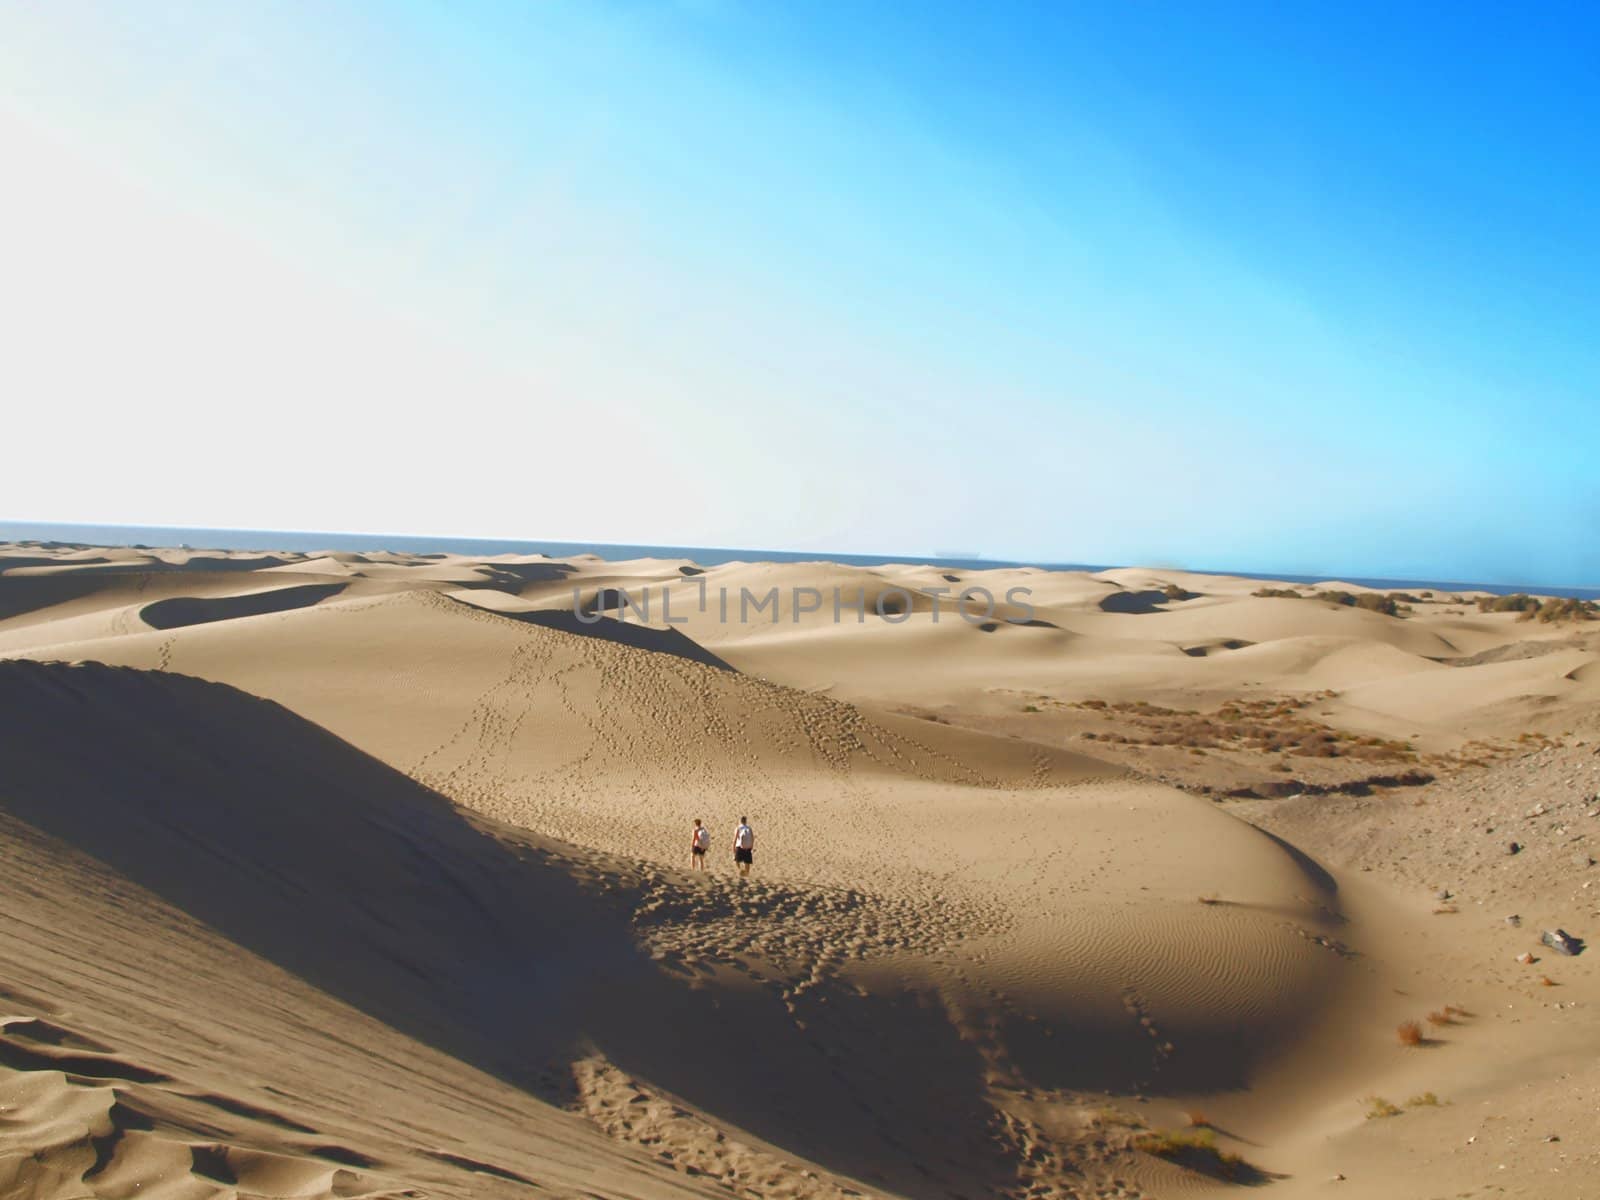 Sand dunes in the Maspalomas desert, Spain